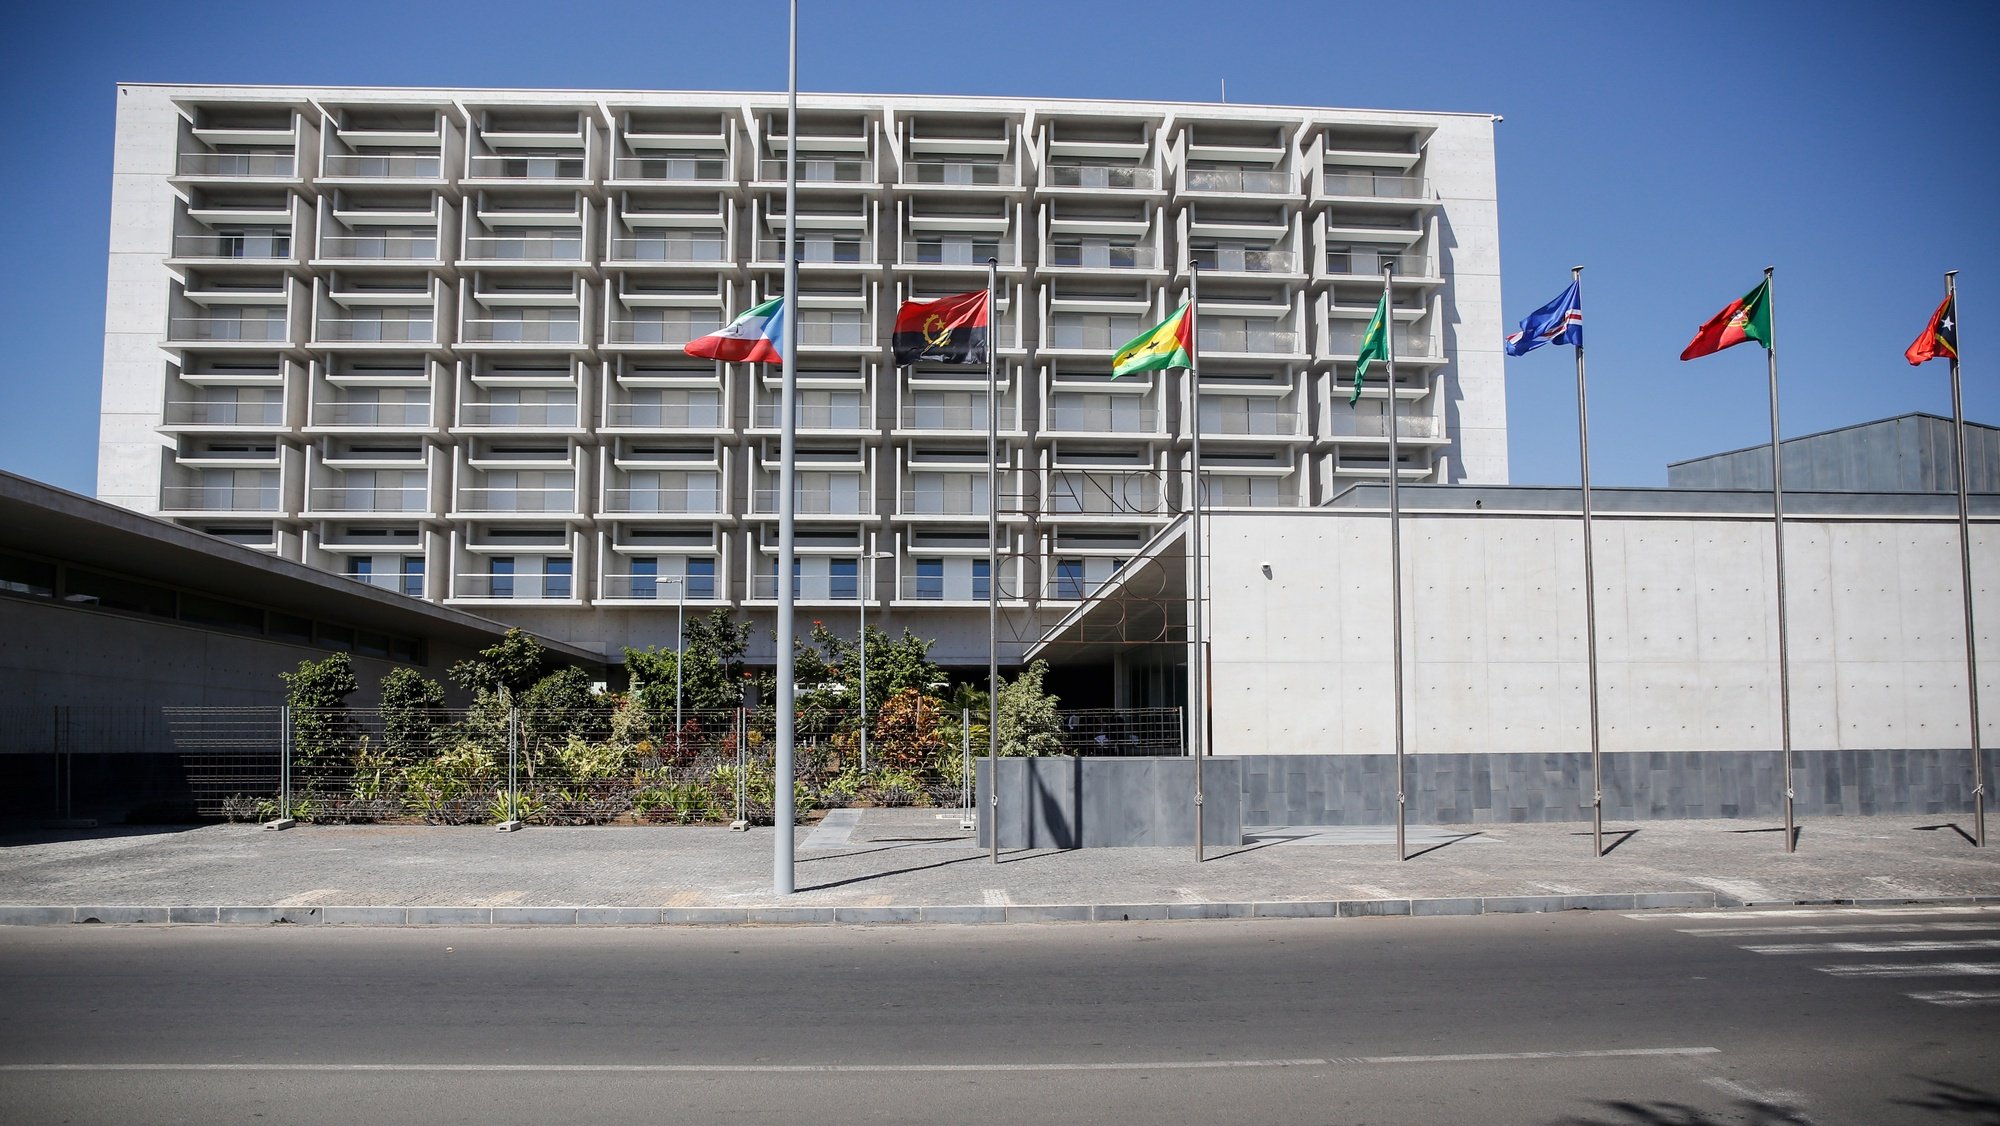 Sede do Banco de Cabo Verde (BCV) desenhada pelo arquiteto Siza Vieira e considerado o mais moderno edifício do país, Cidade da Praia, Cabo Verde, 11 de fevereiro de 2021.  FERNANDO DE PINA/LUSA